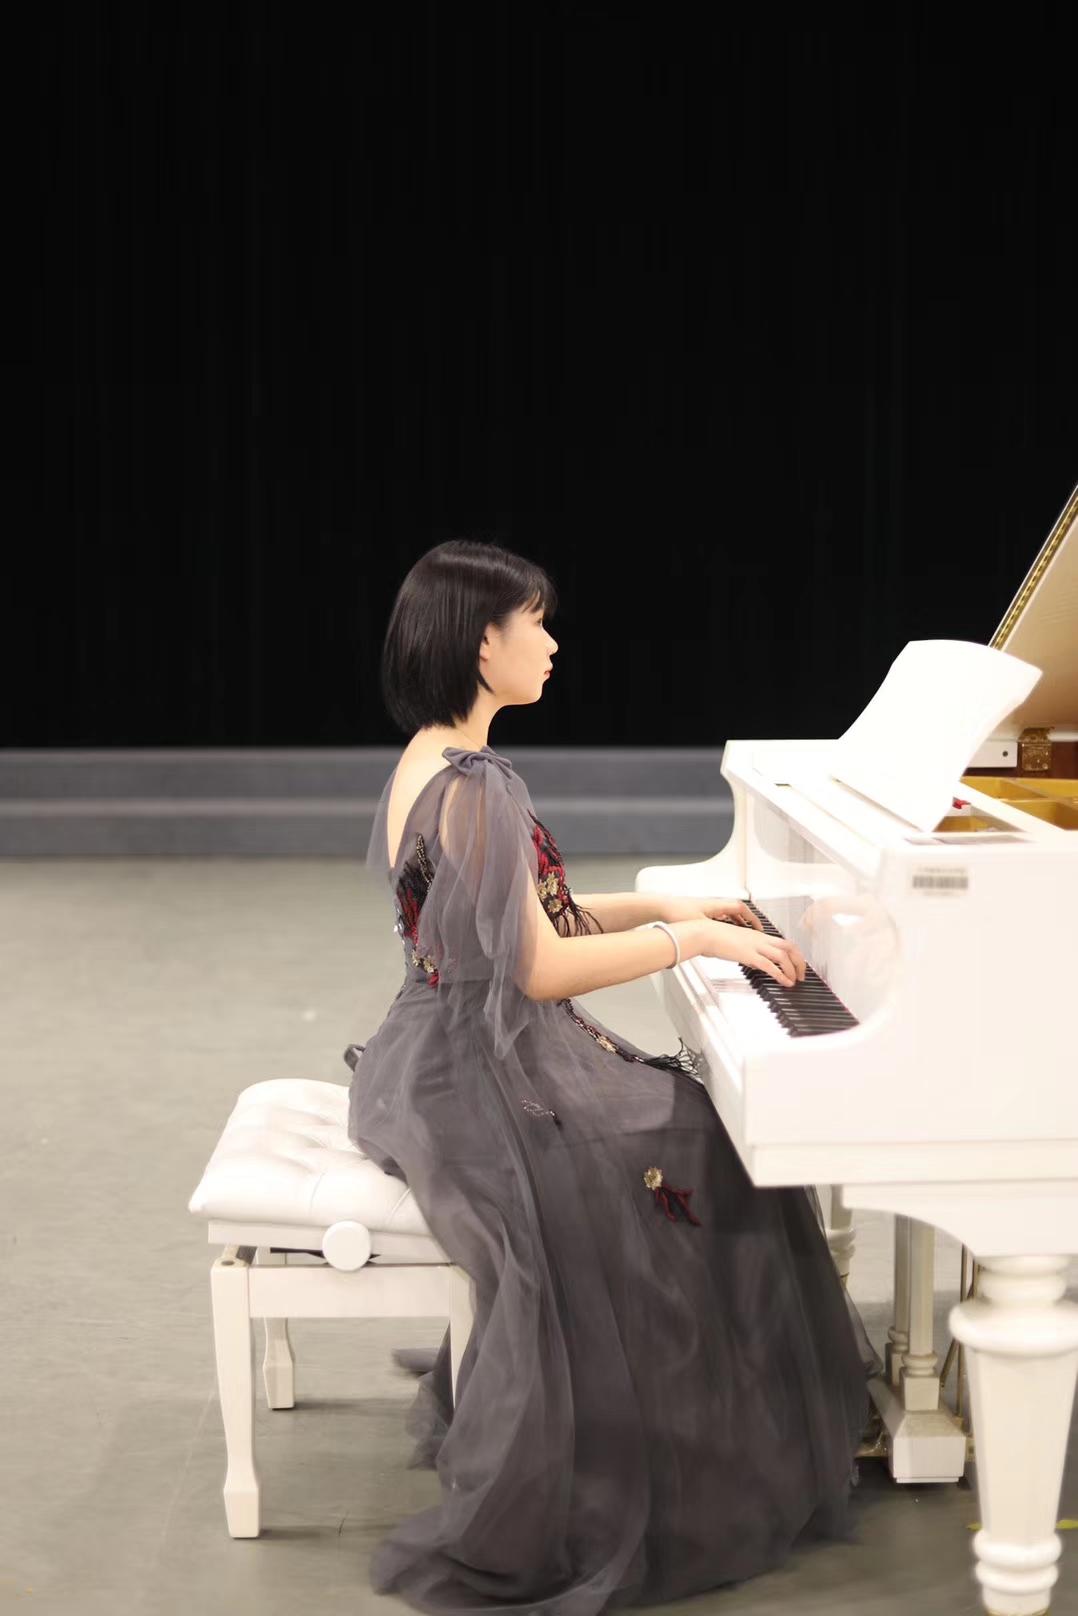 启程|音乐舞蹈学院17级音乐表演专业钢琴毕业音乐会成功举办-江南影视艺术学院音乐舞蹈学院